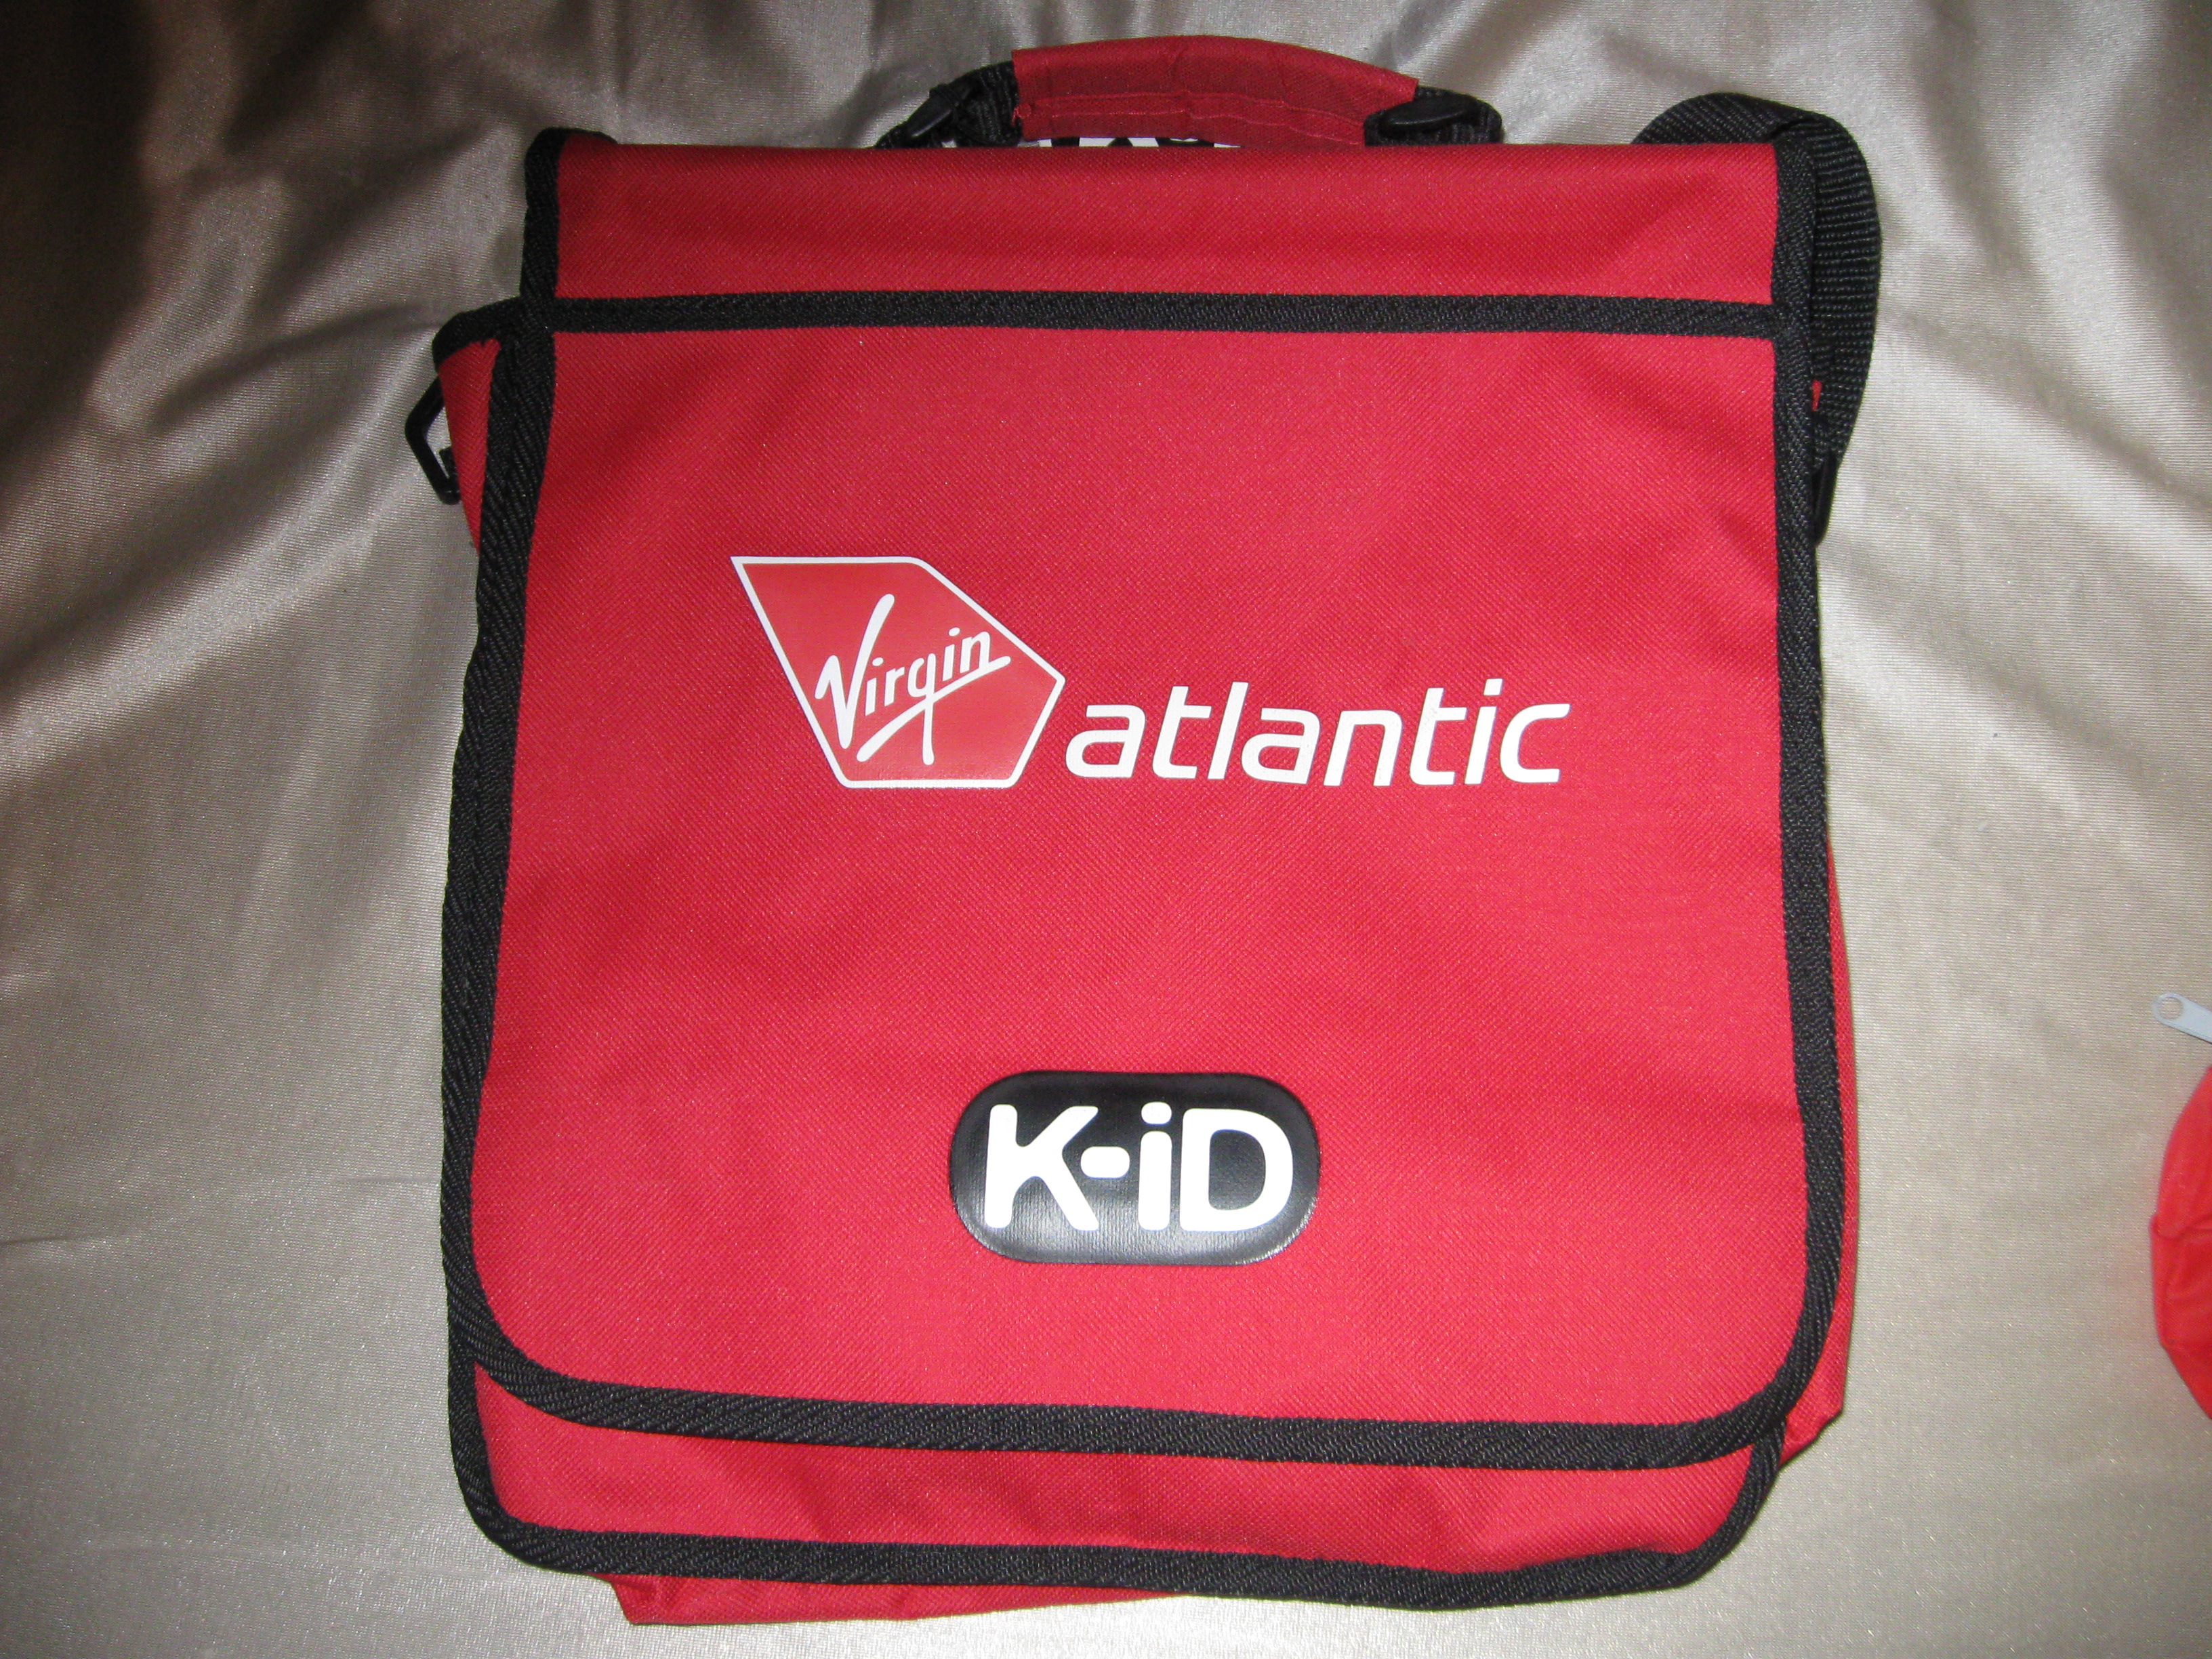 Virgin Atlantic K-iD backpack/ bag